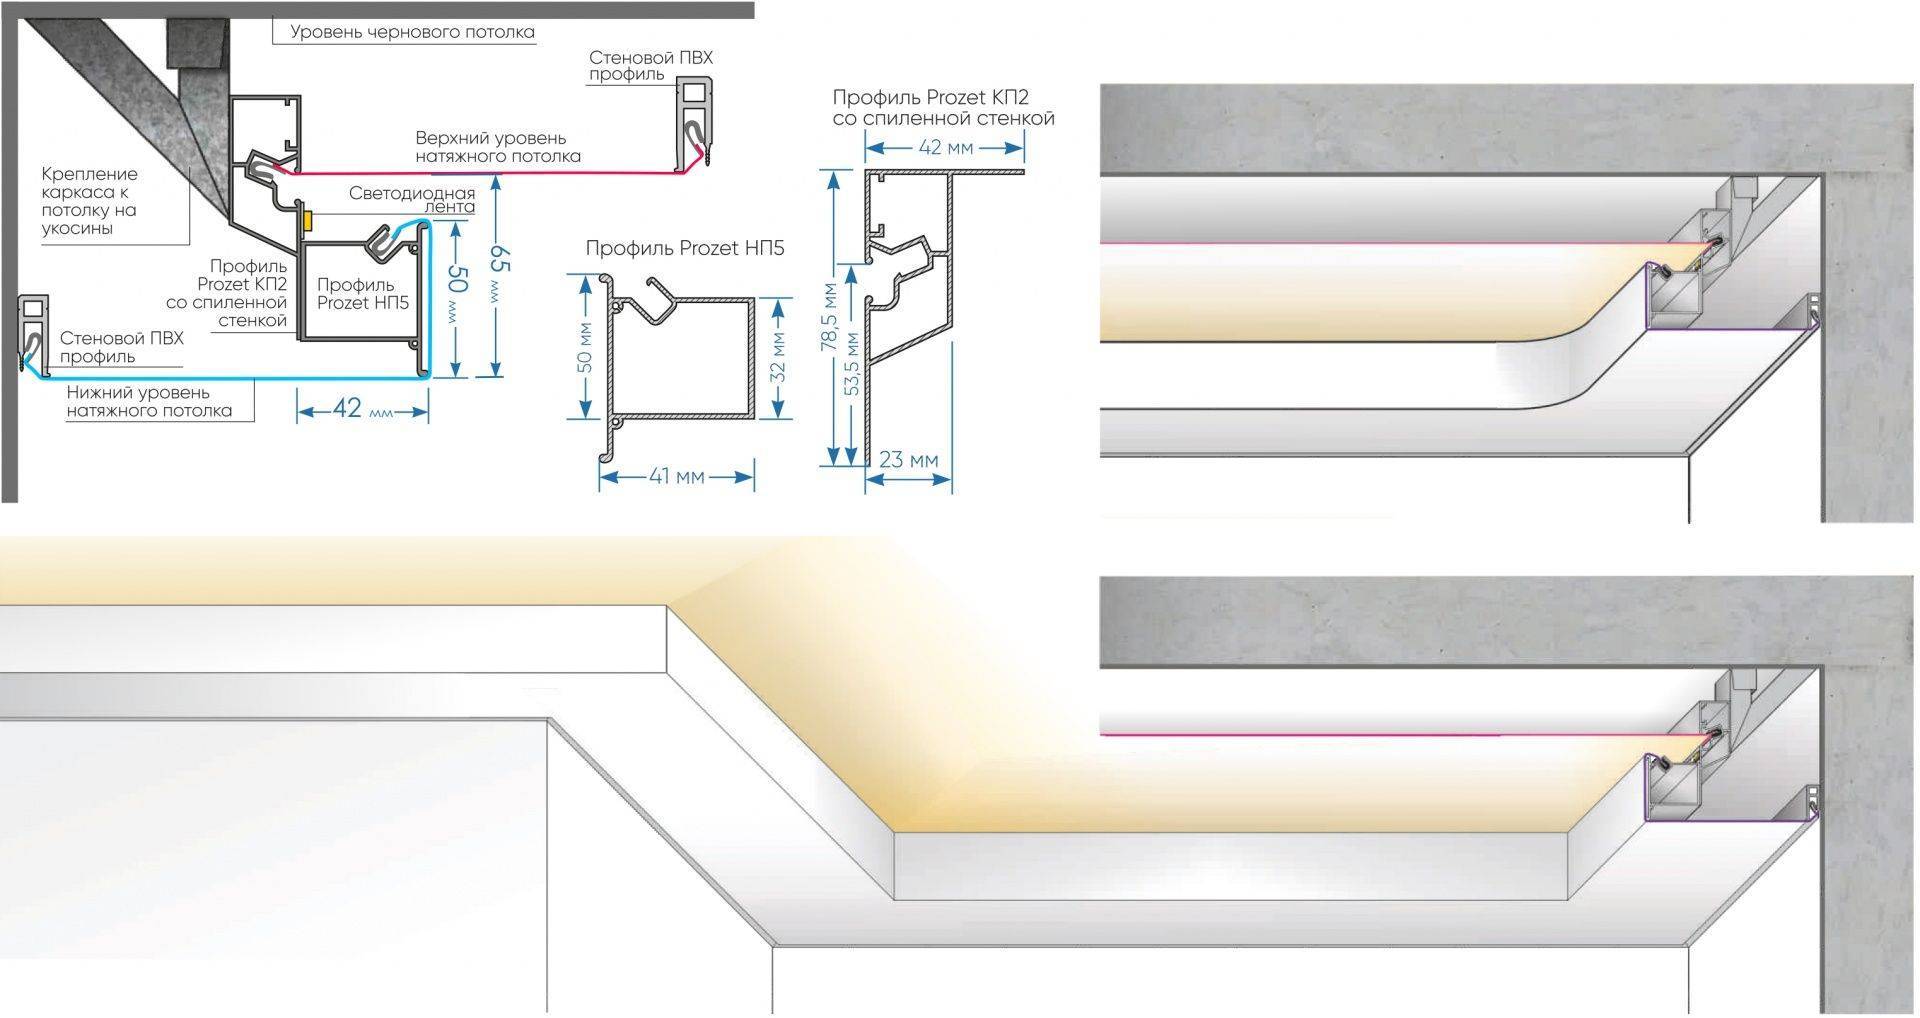 Светодиодная лента на потолок - как сделать своими руками регулируемую подсветку